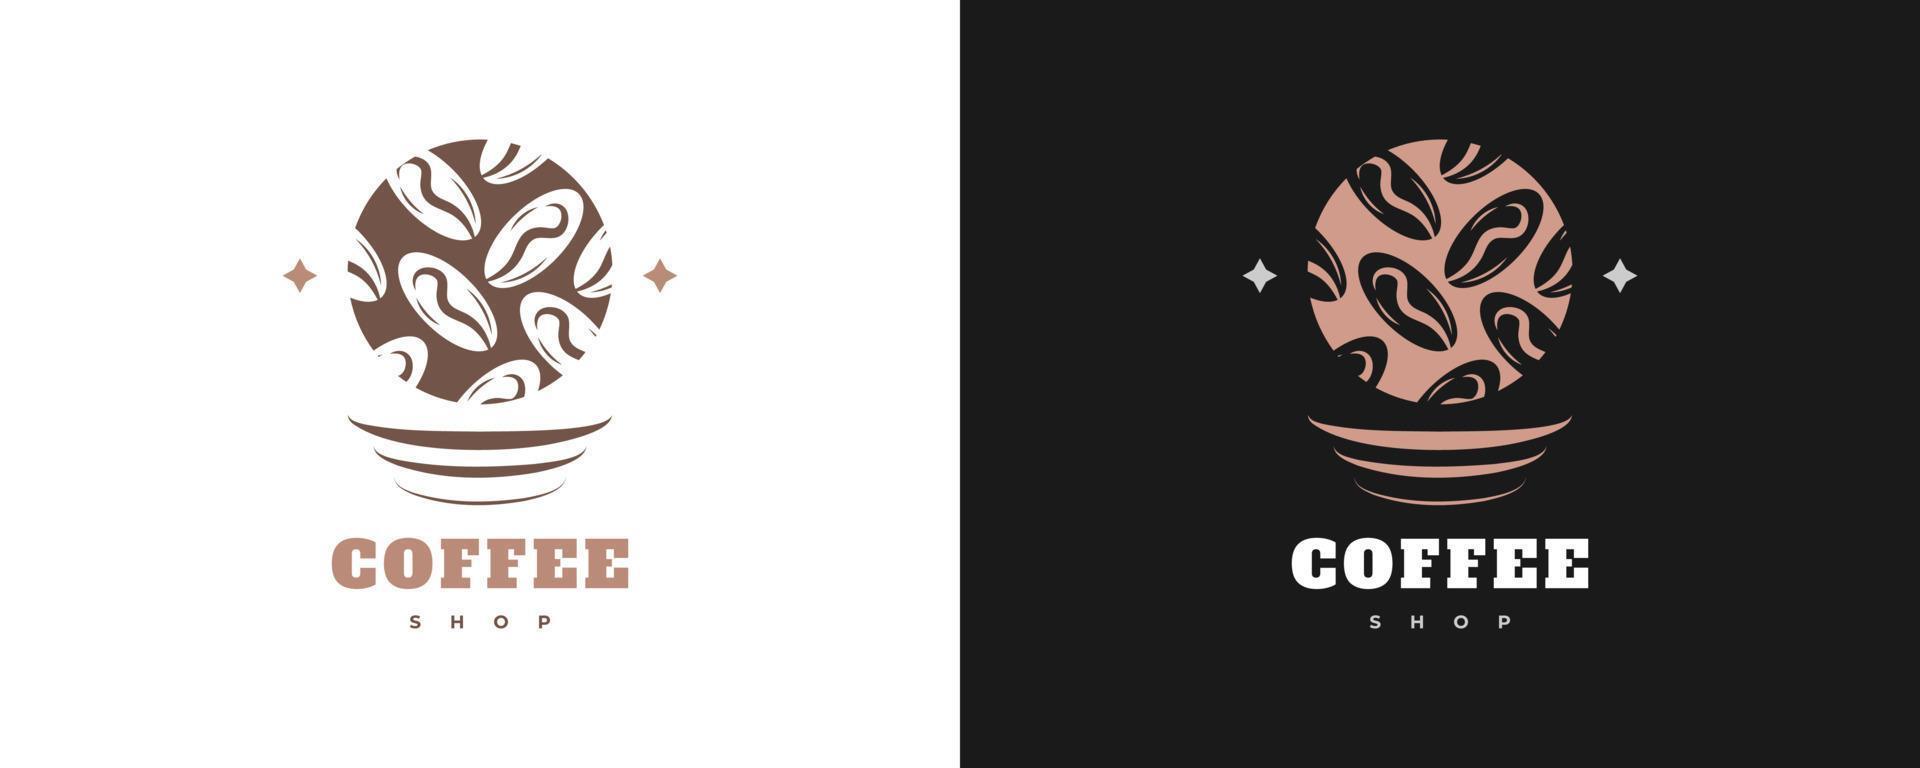 logo de café vintage et minimal. logo ou emblème de café avec un style rétro vecteur